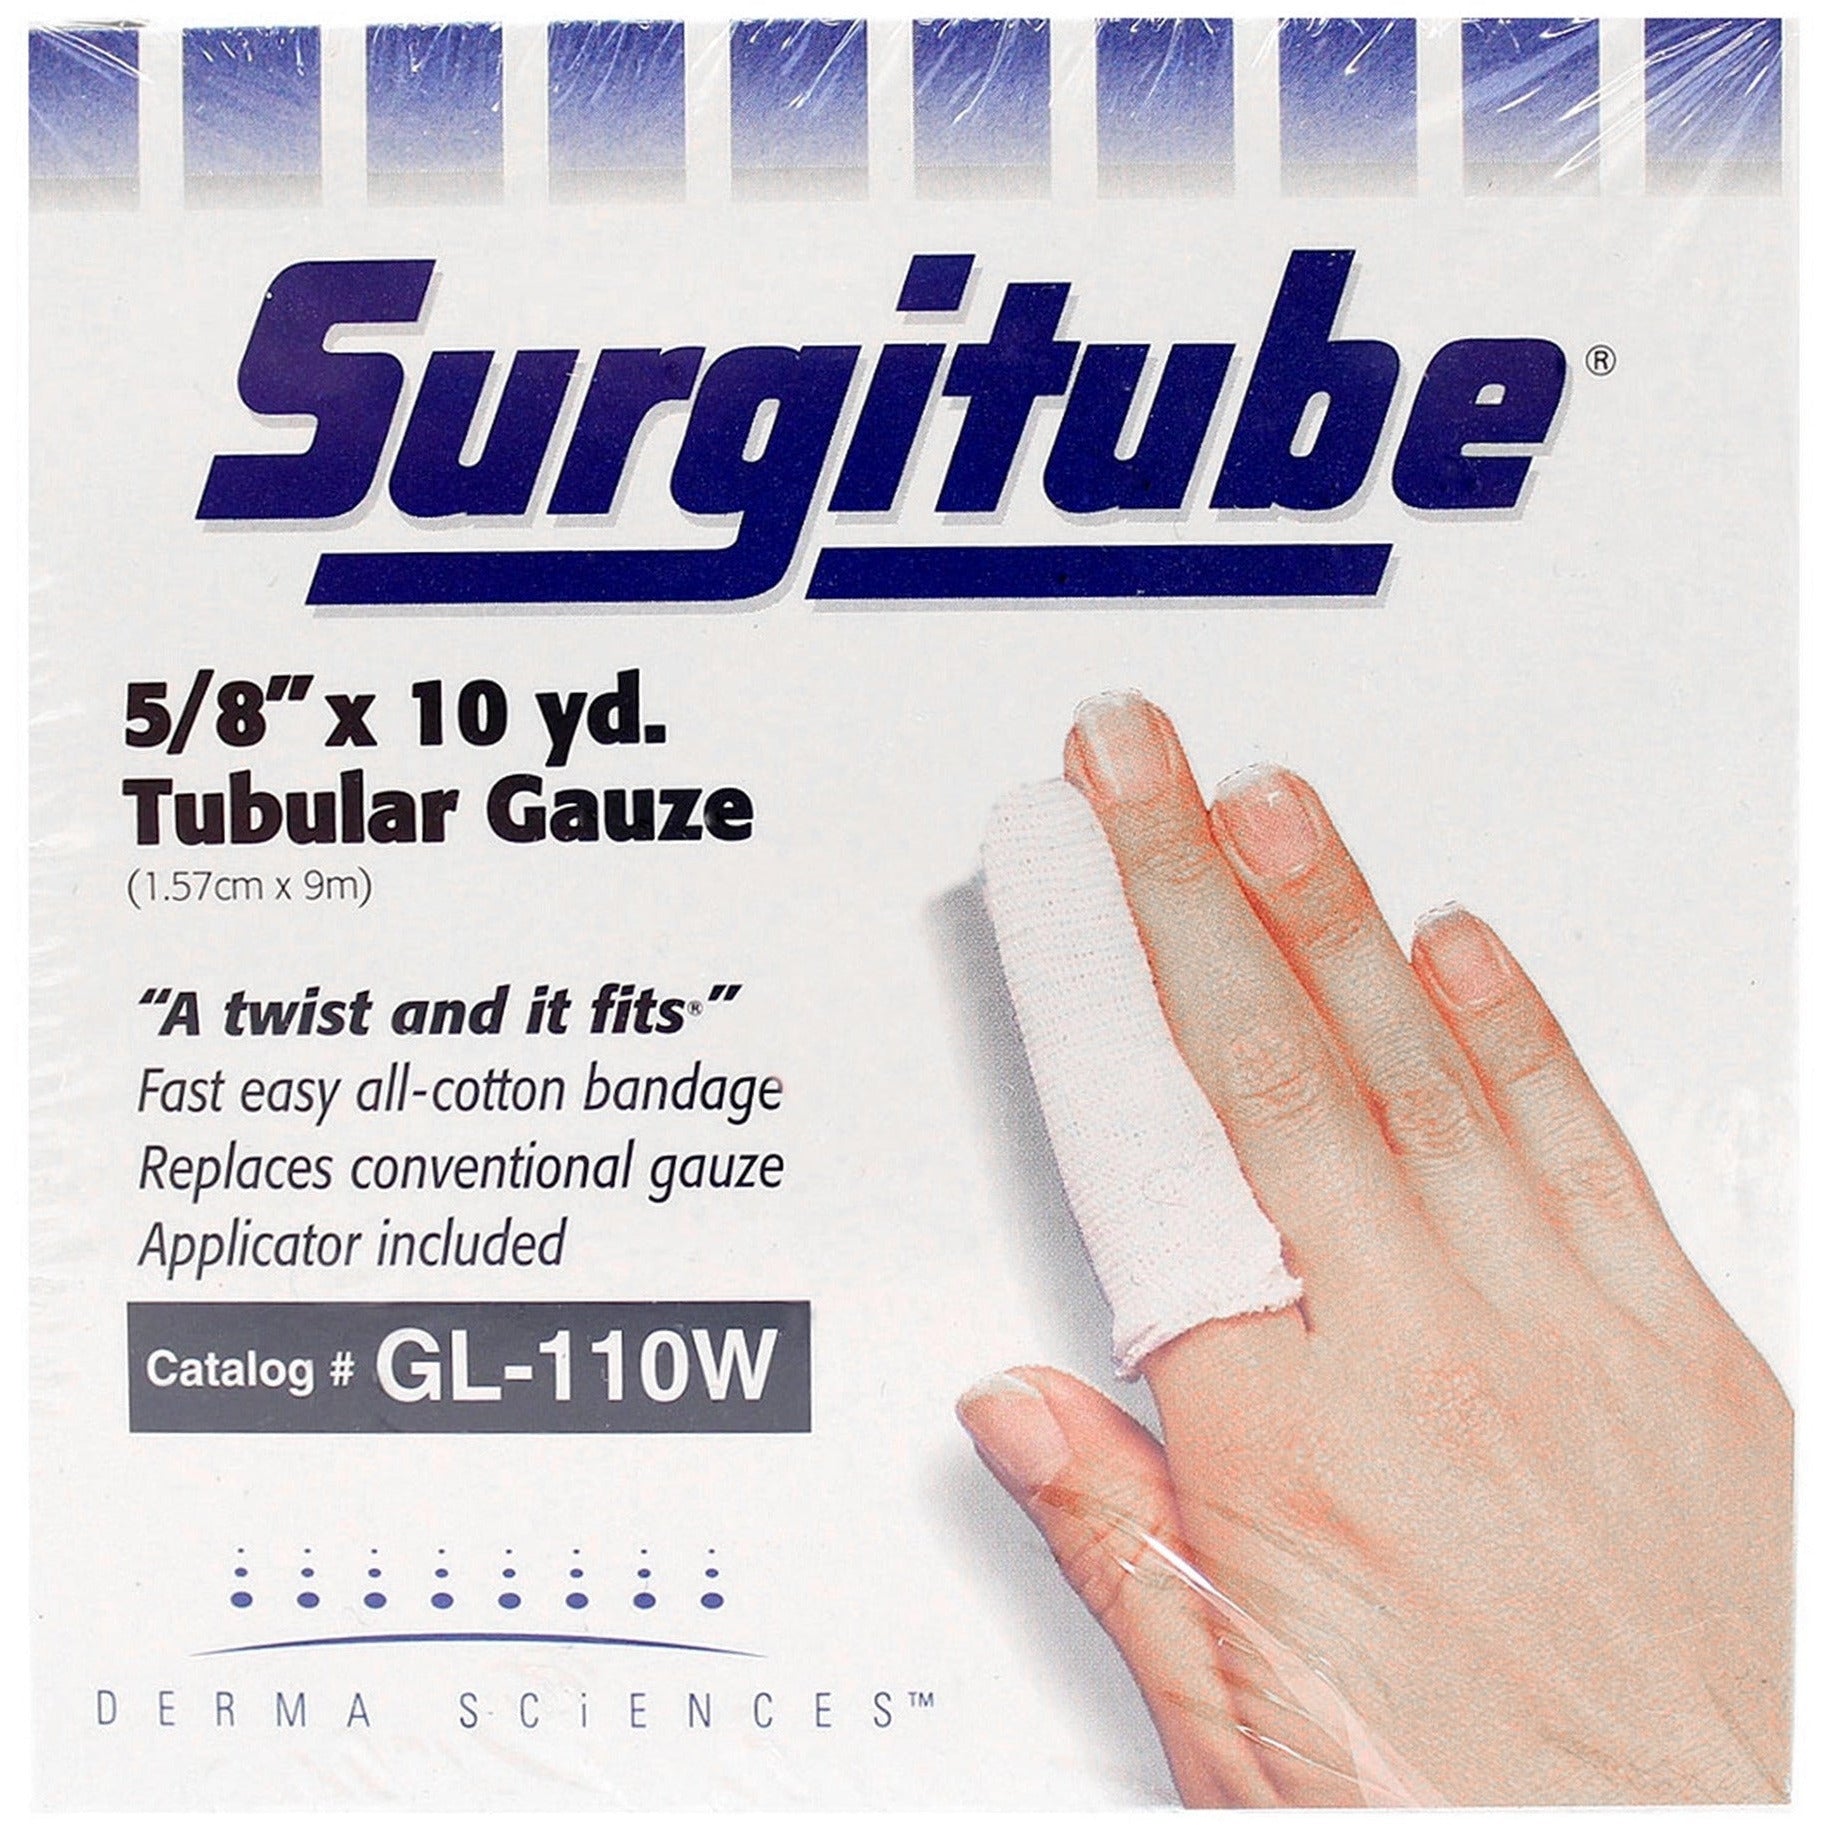 Surgitube Tubular Gauze Bandage, Size 1 White, 5/8" x 10 yds